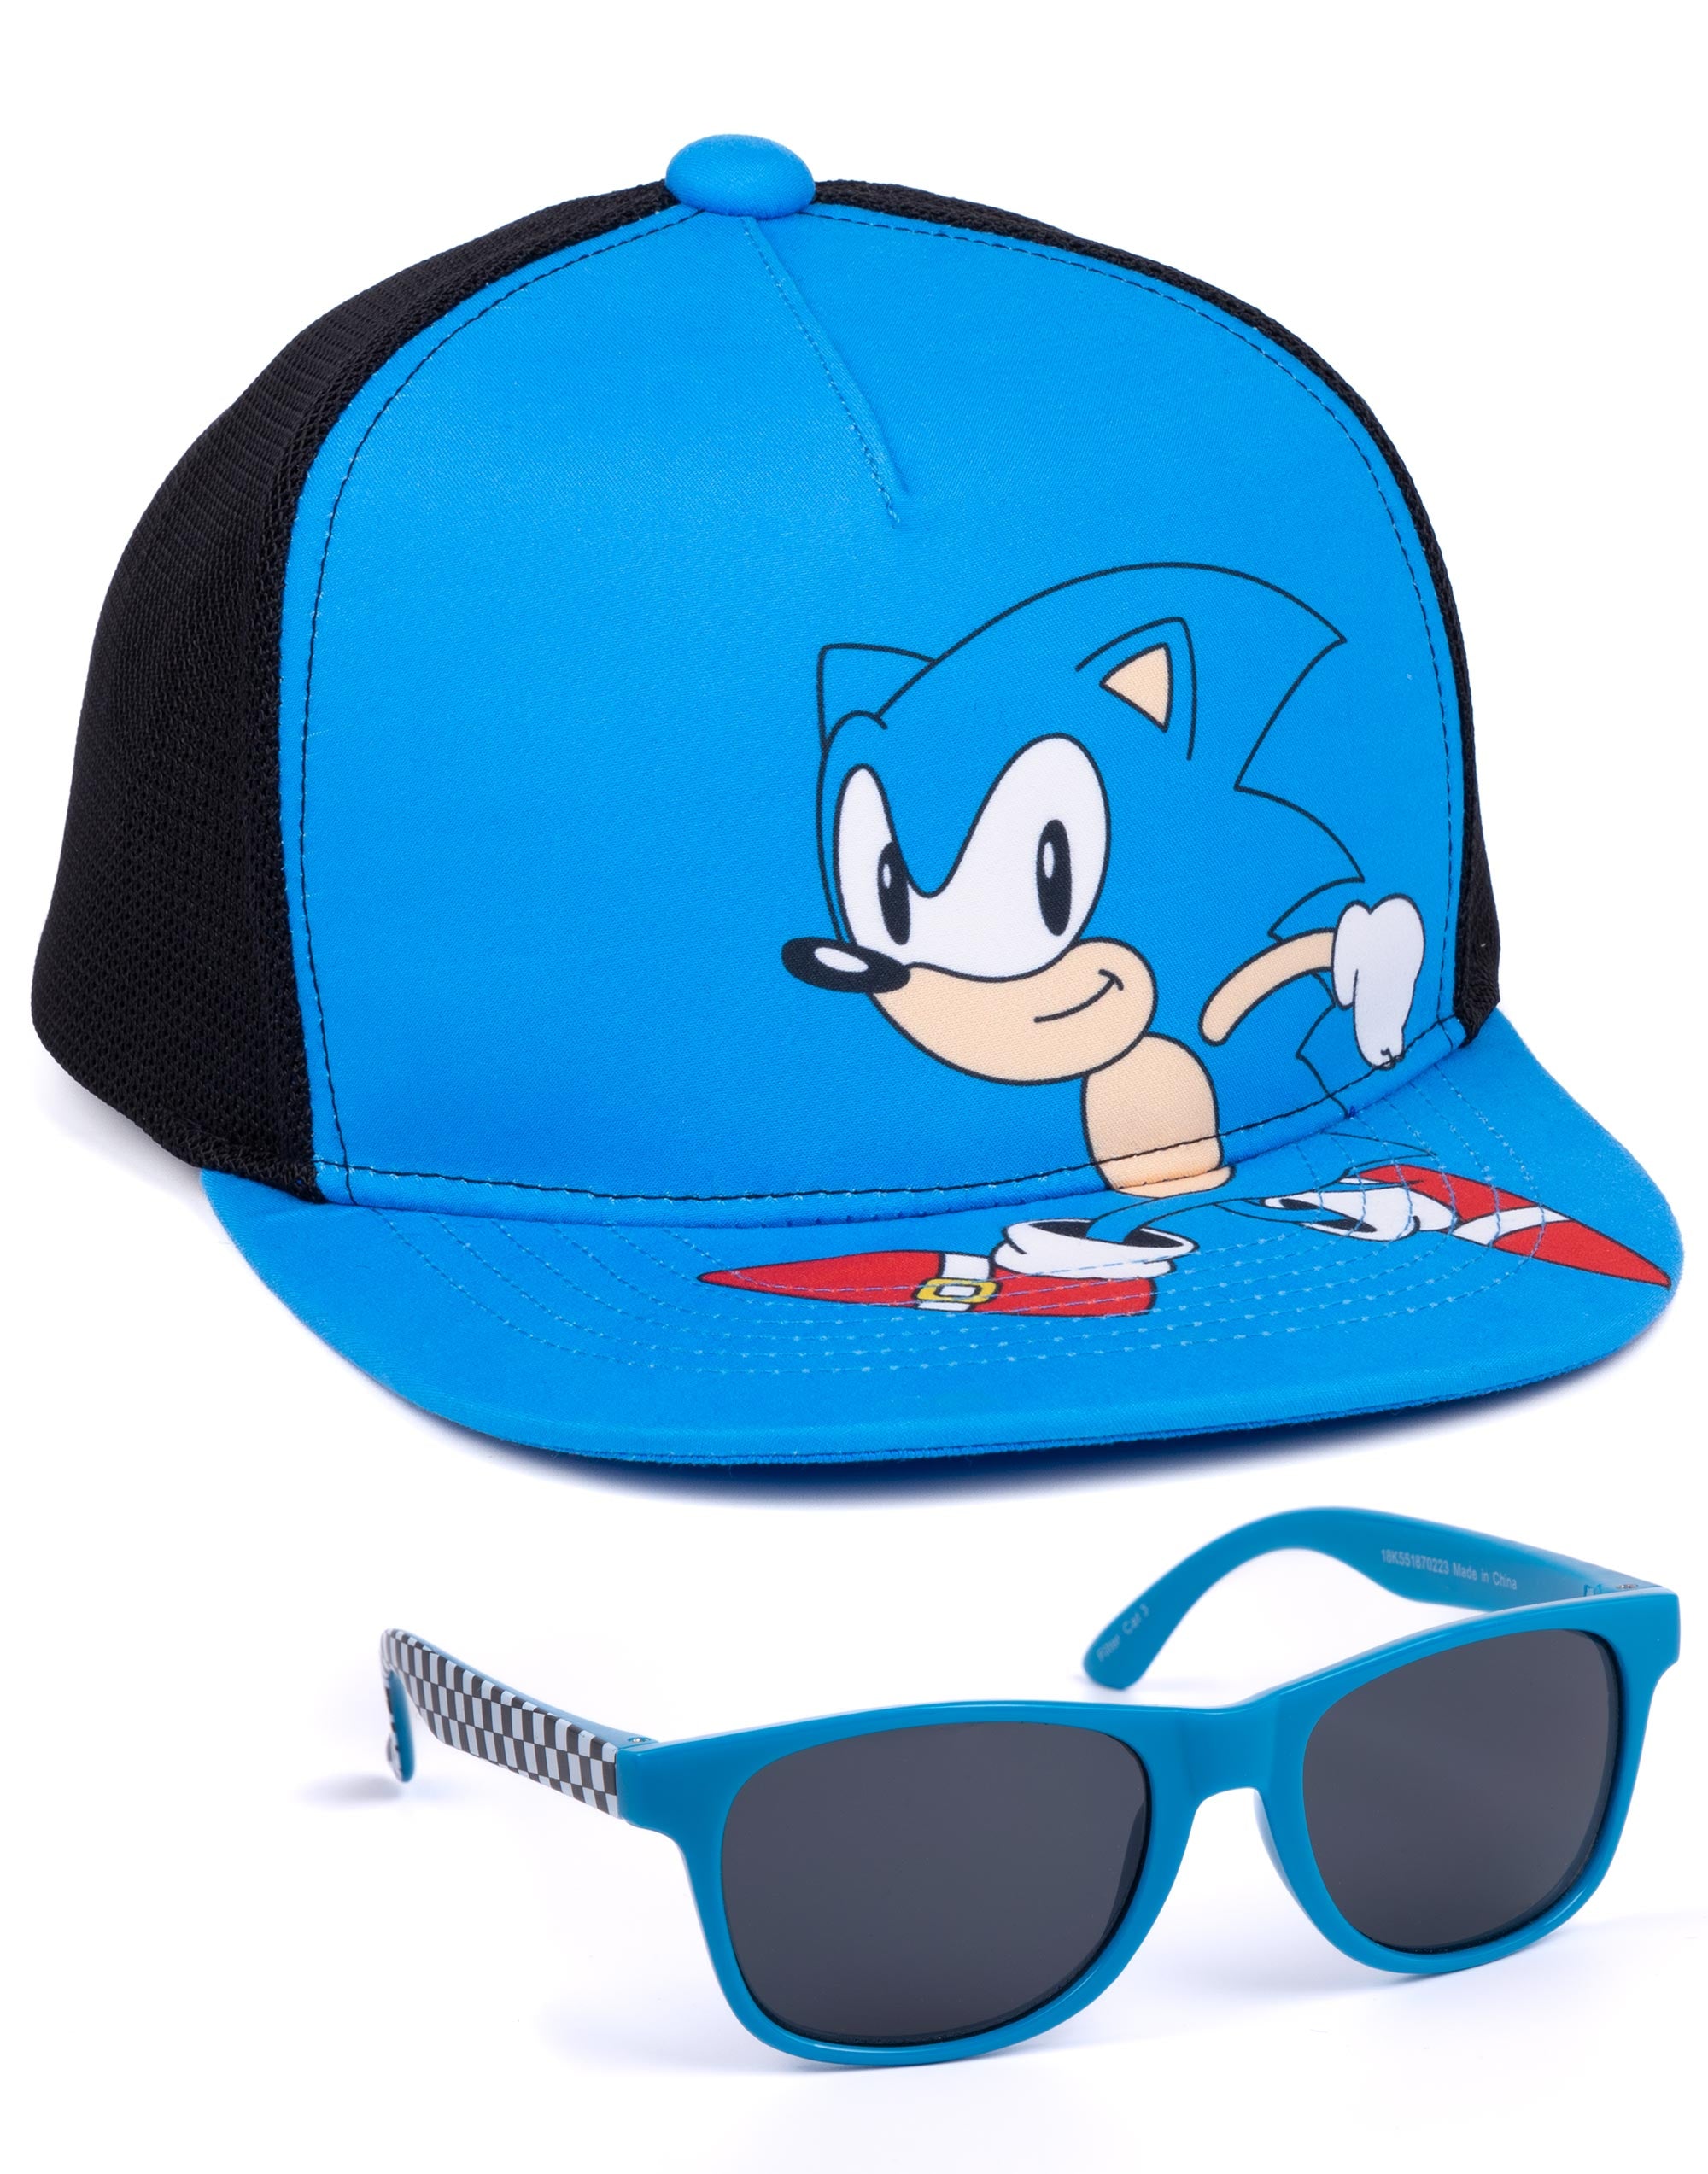 Sonic Cap and Sunglasses